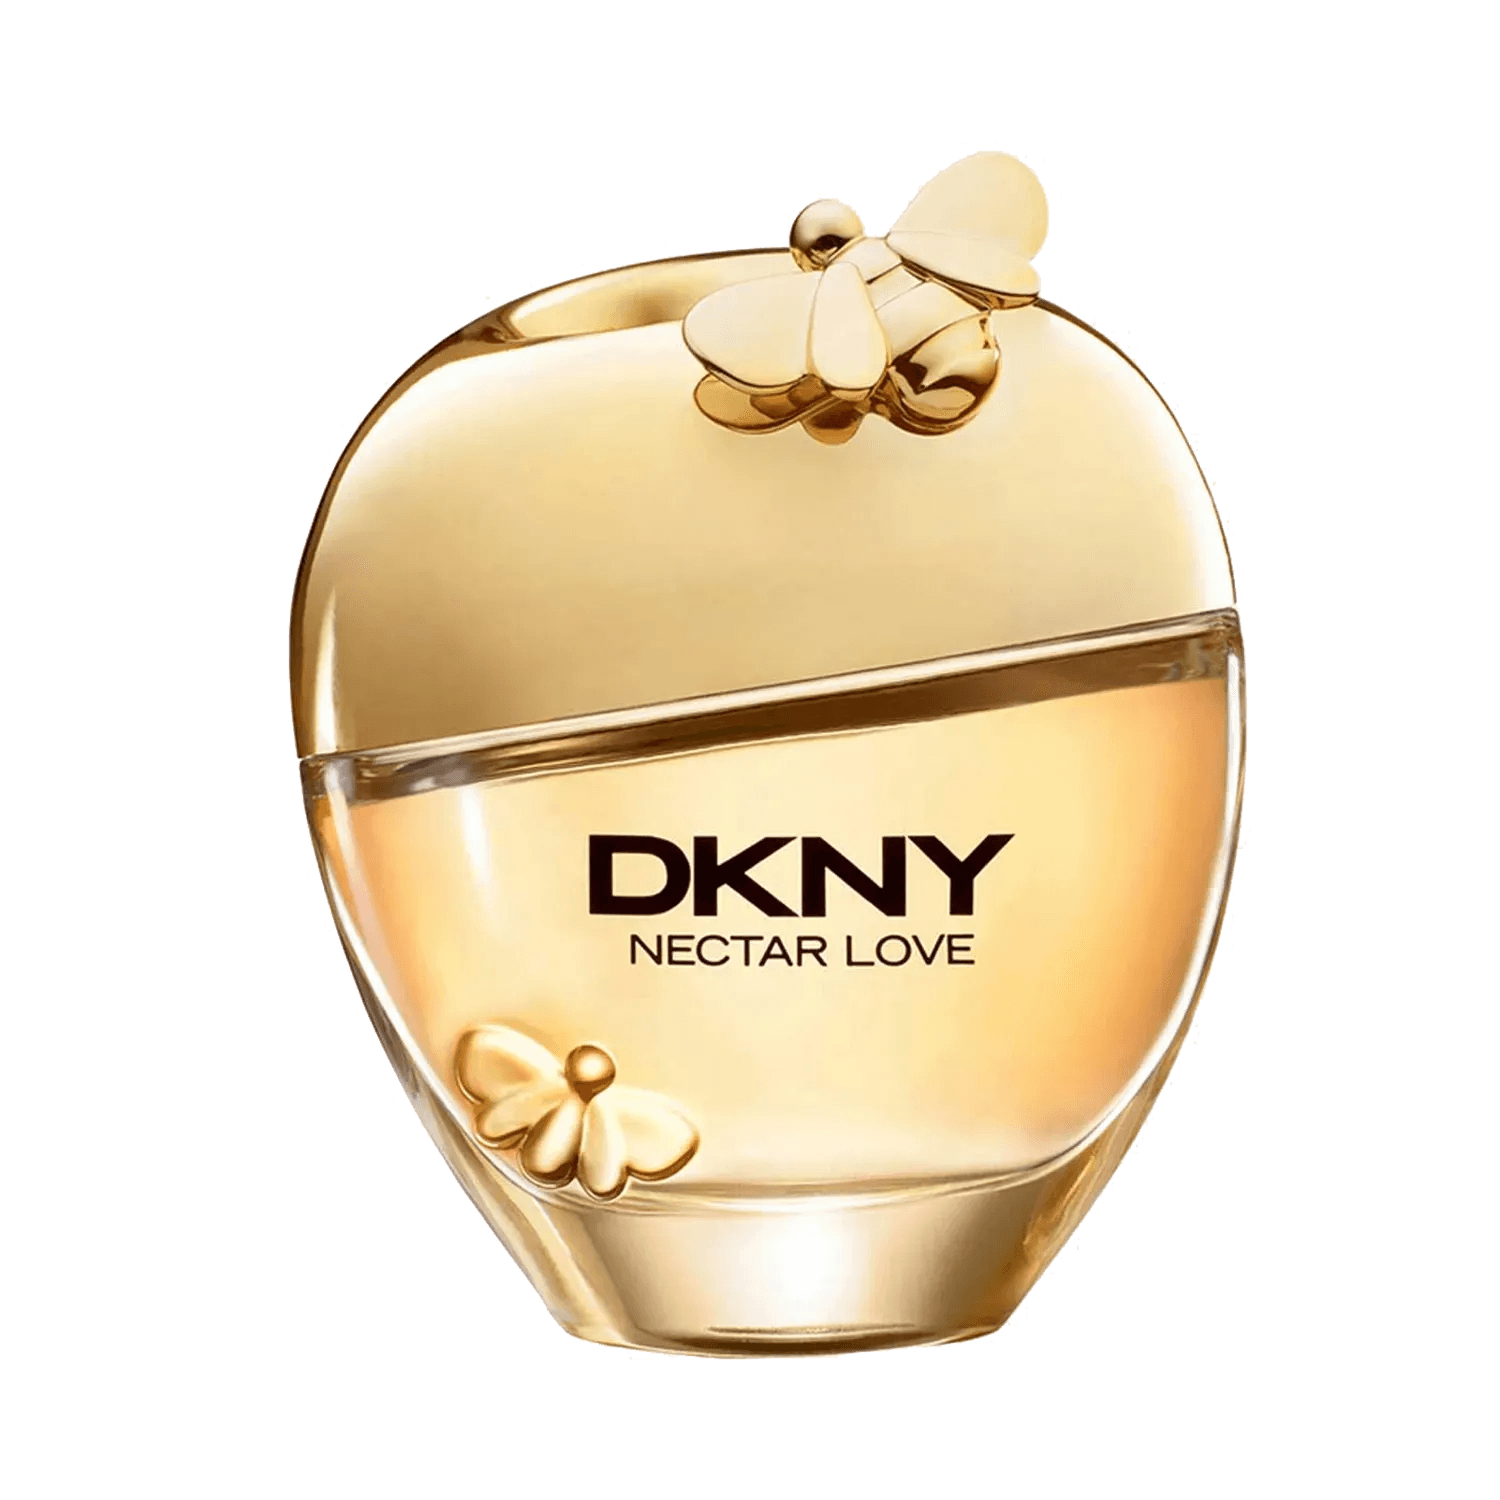 Buy DKNY Nectar Love Eau de Parfum (100ml) Online at Best Price in